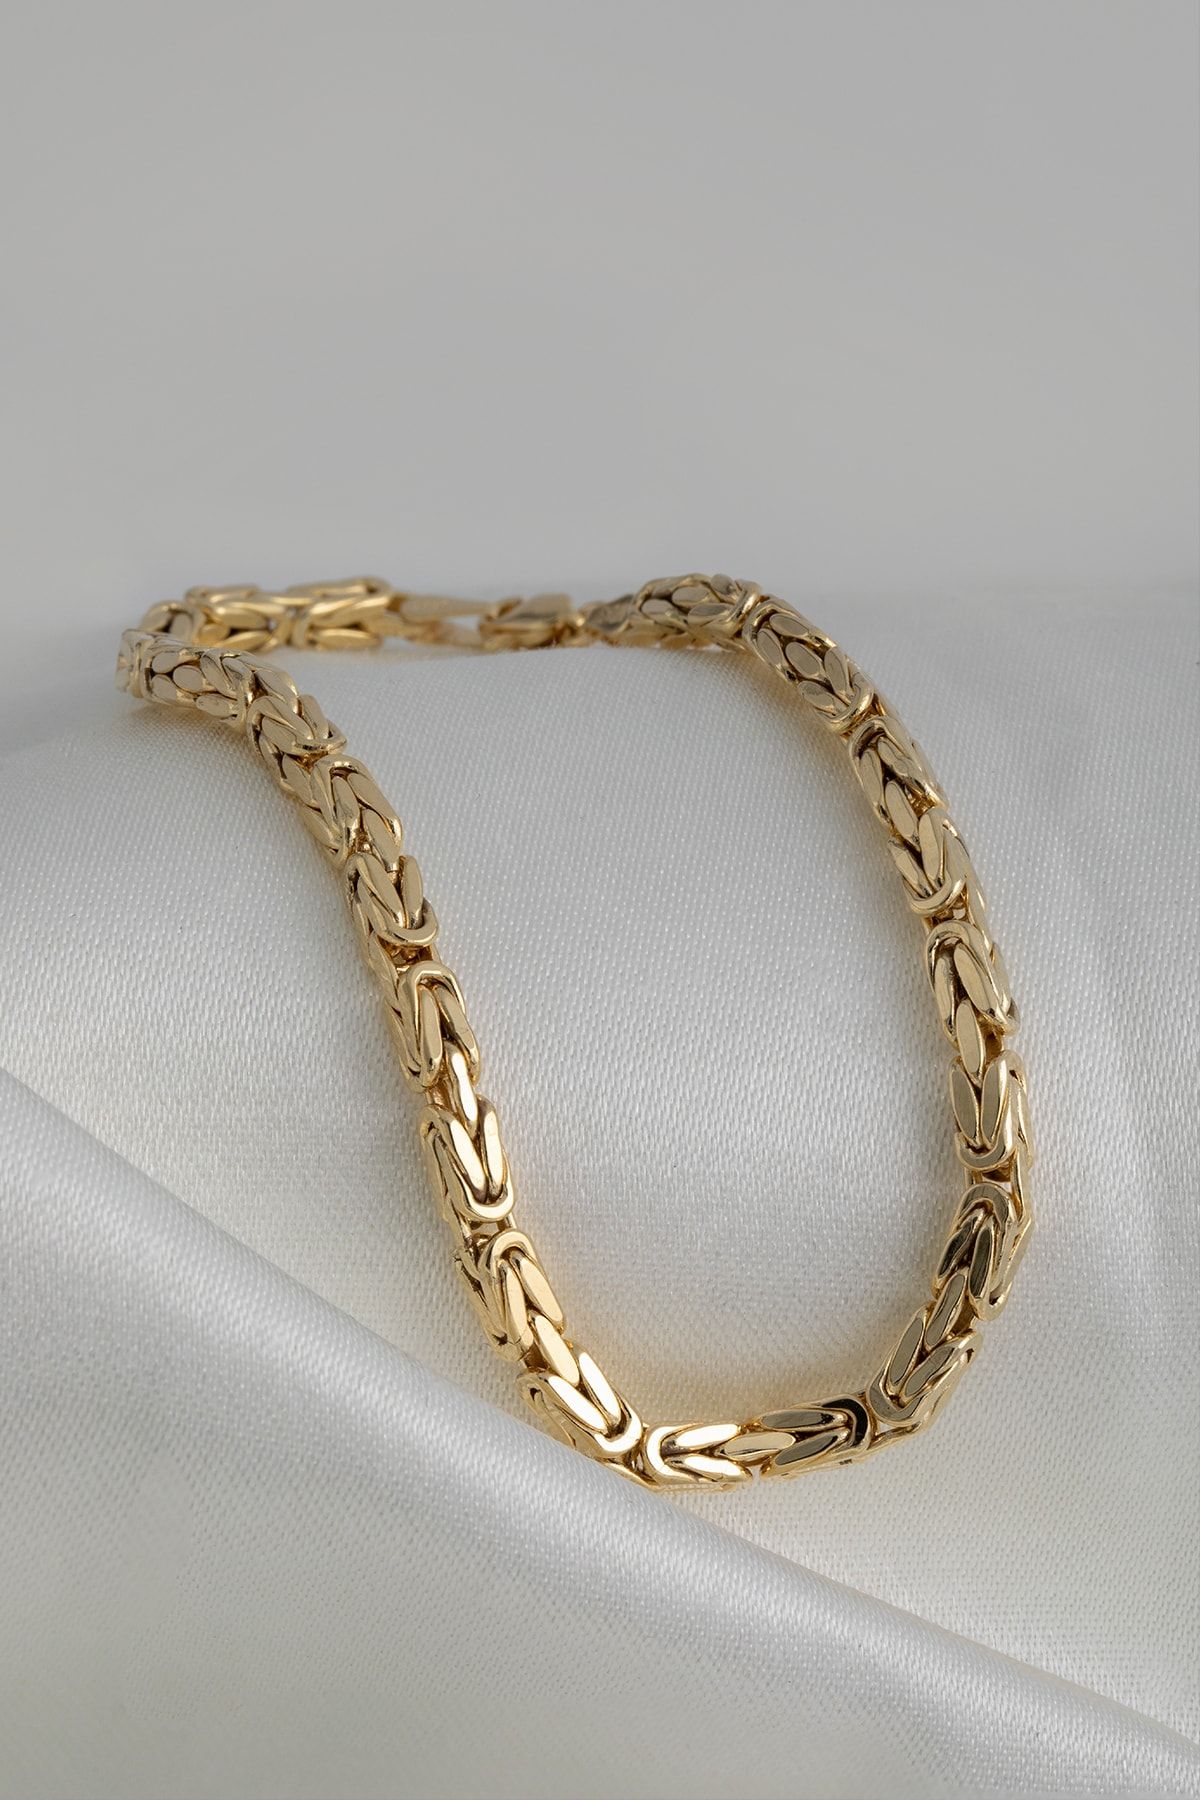 Cenova Jewelry 14 Ayar Altın Kral Zincir Erkek Bileklik